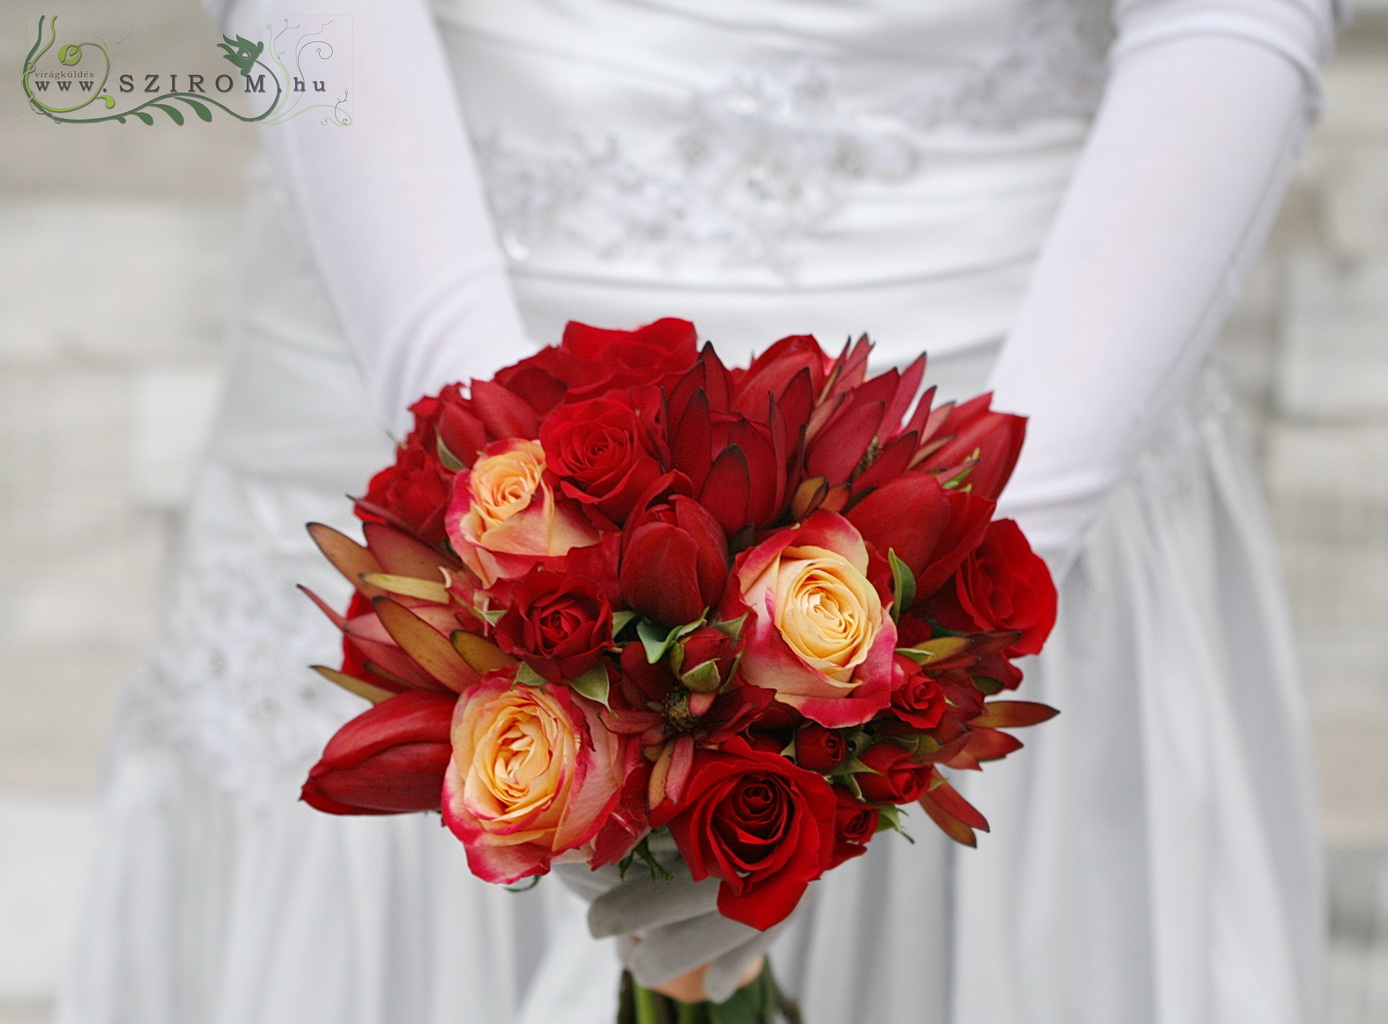 Menyasszonyi csokor izzó vörös ( rózsa, tulipán, bokros rózsa, leucadendron)